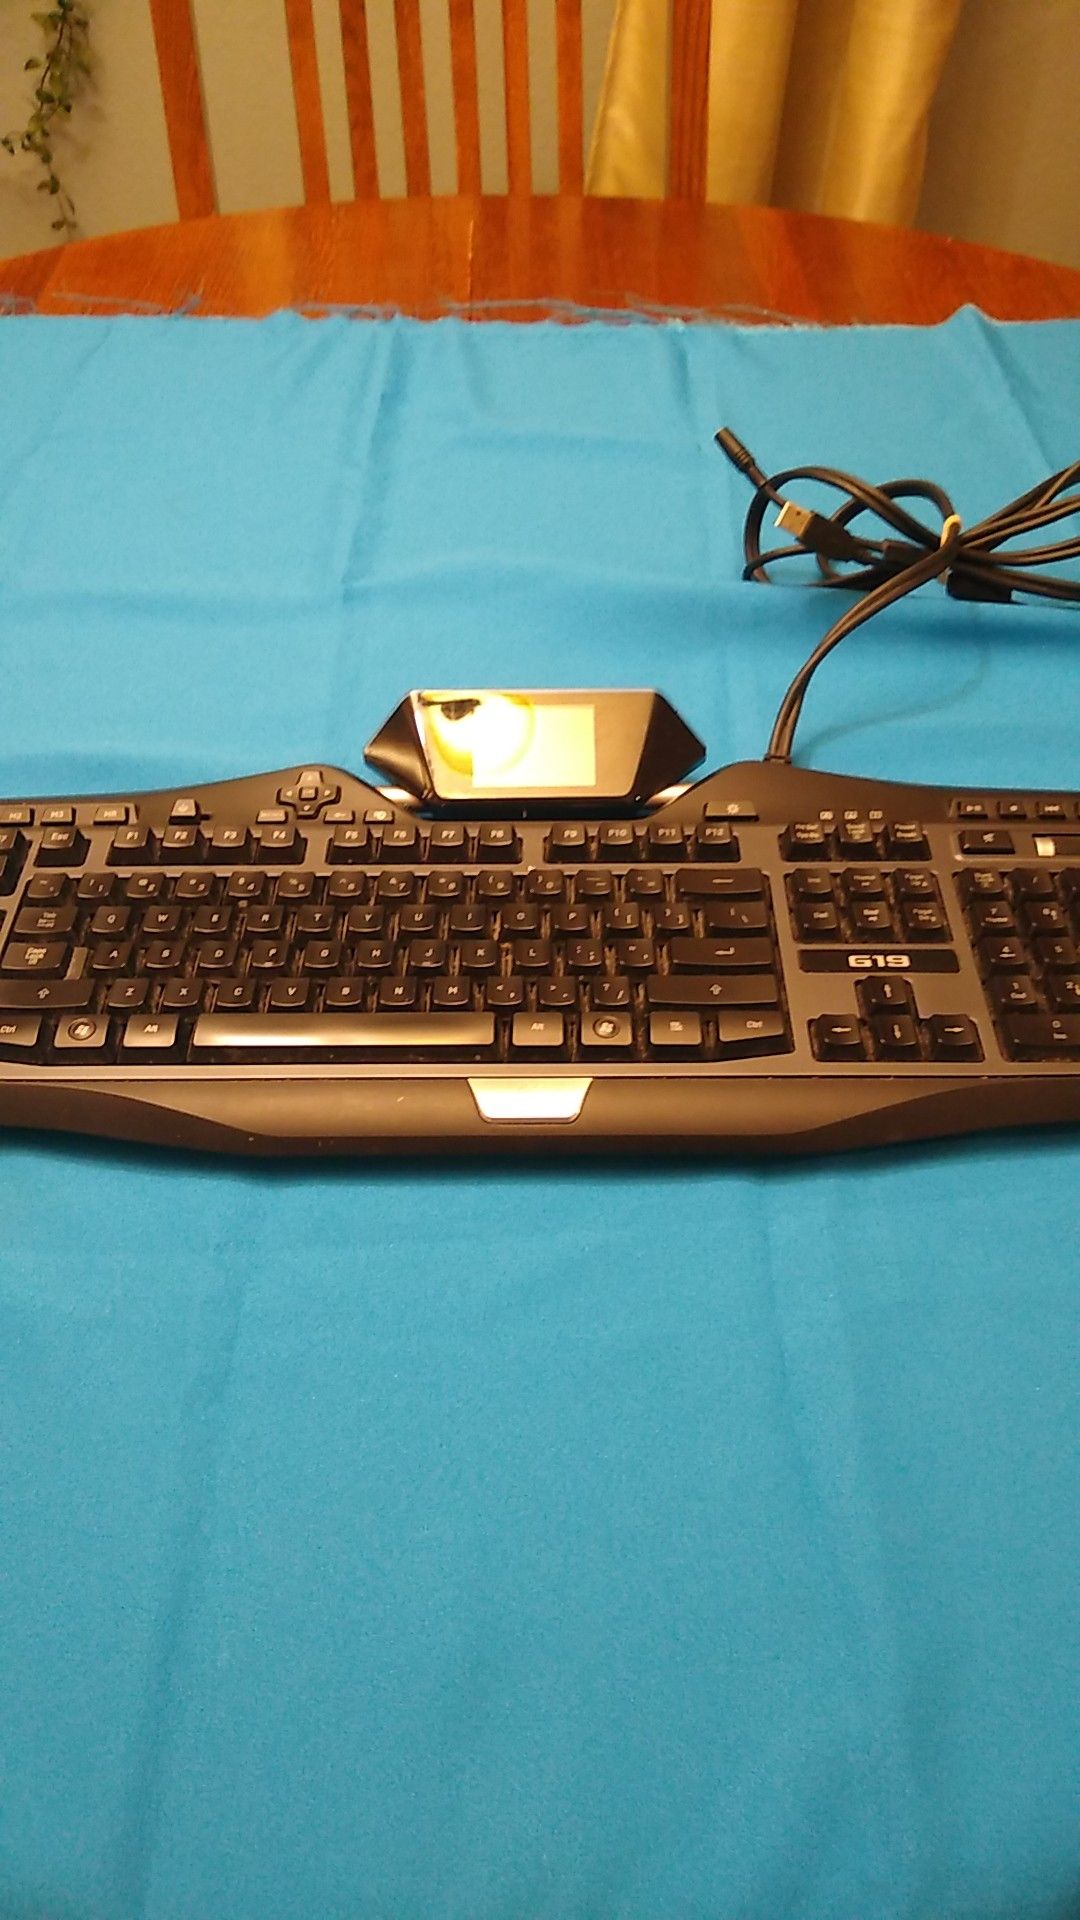 Logitech Computer Keyboard G19